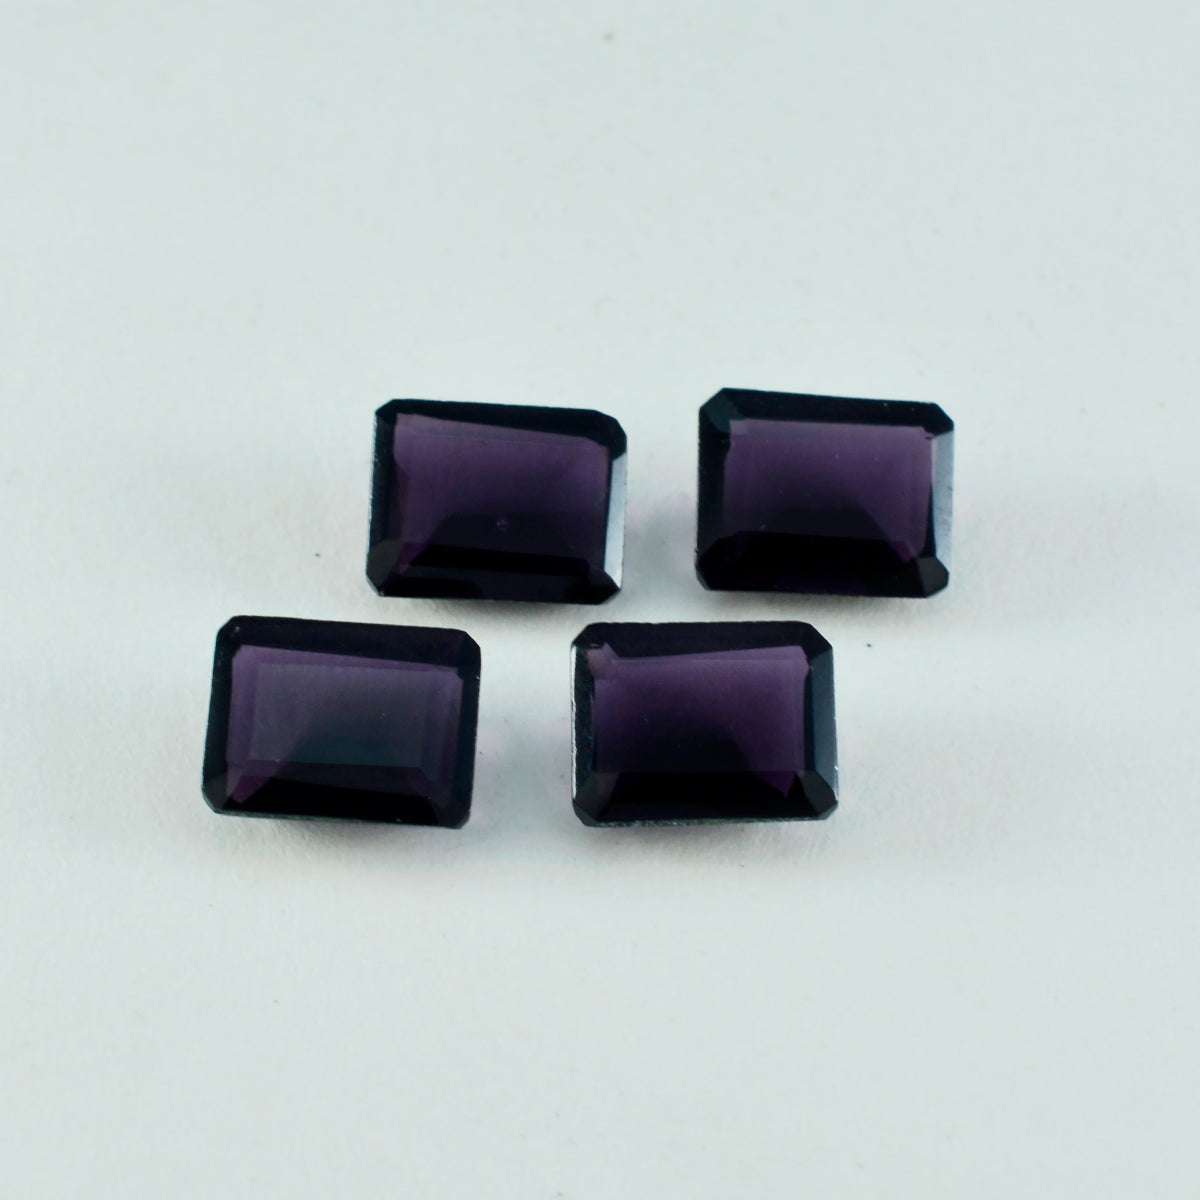 riyogems 1 шт. фиолетовый аметист cz граненый 12x16 мм восьмиугольной формы, хорошее качество, свободный драгоценный камень